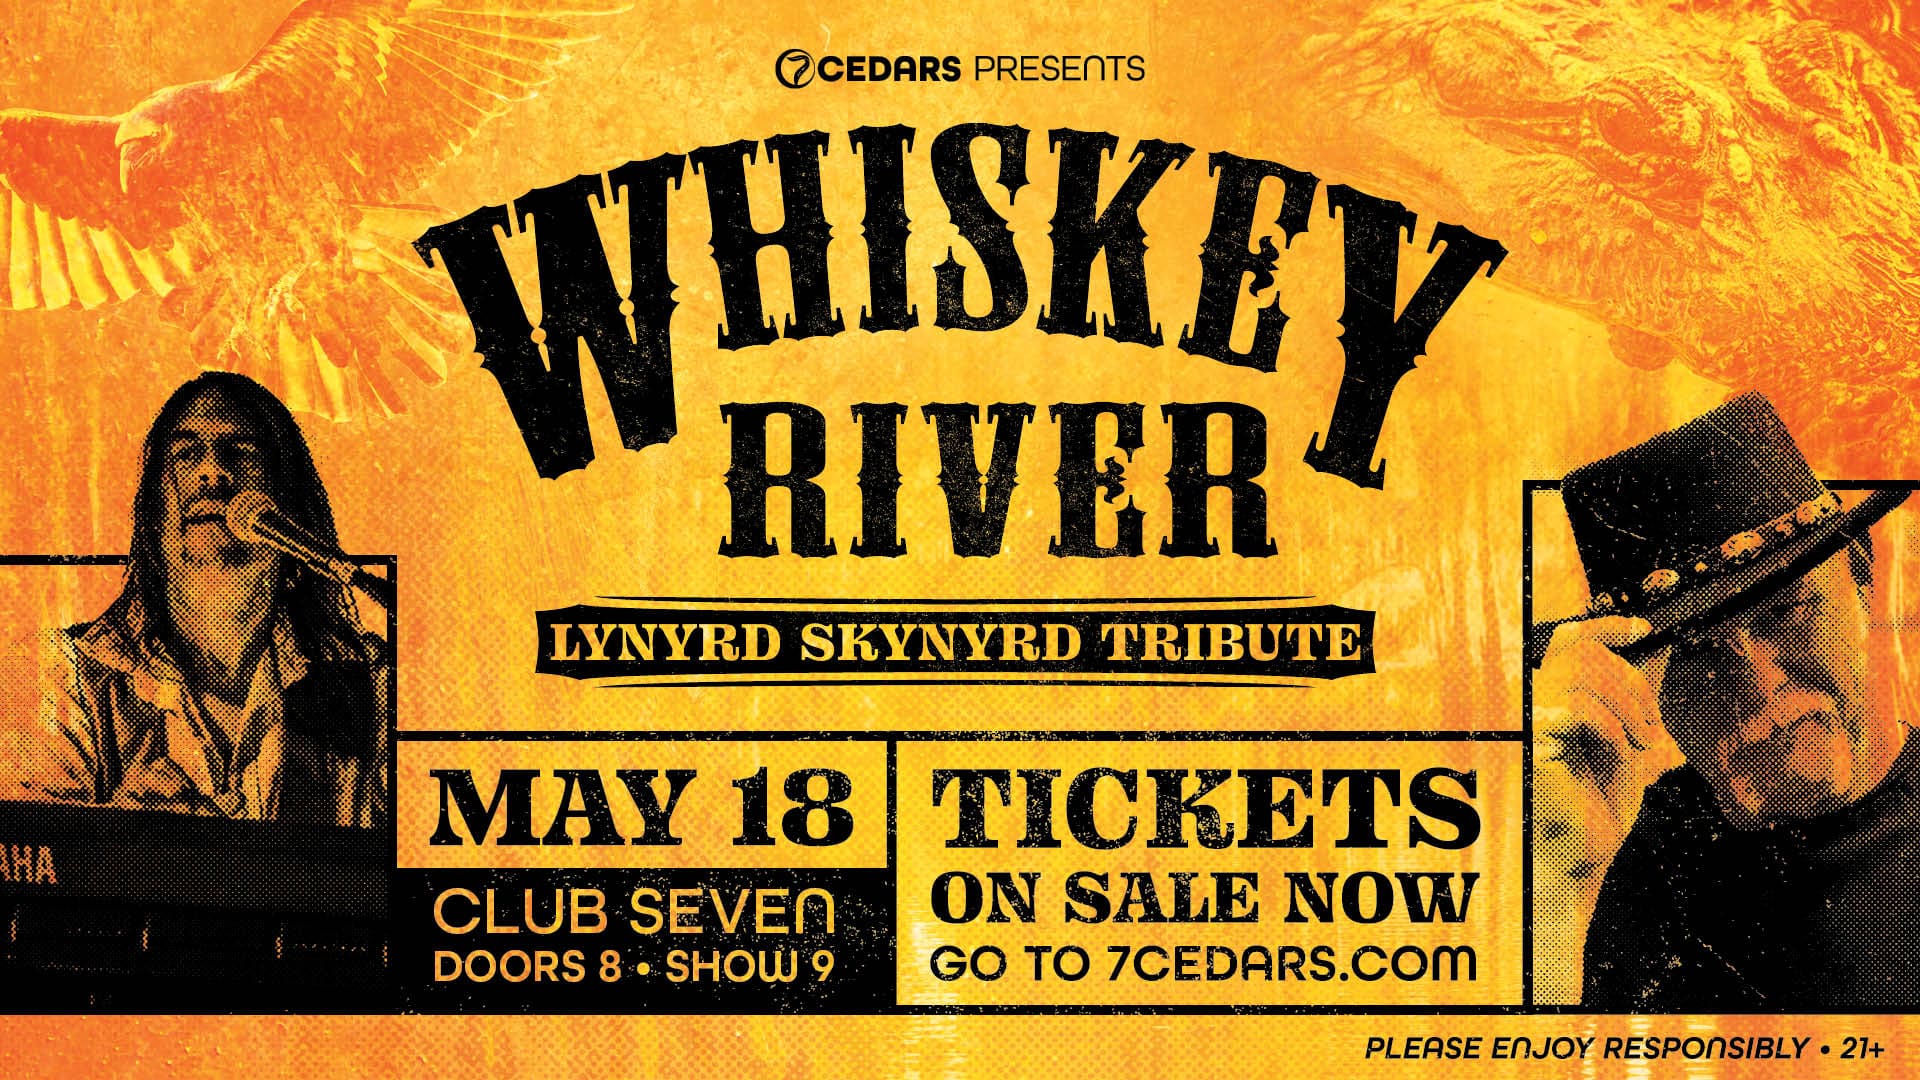 Whiskey River: Lynyrd Skynyrd Tribute